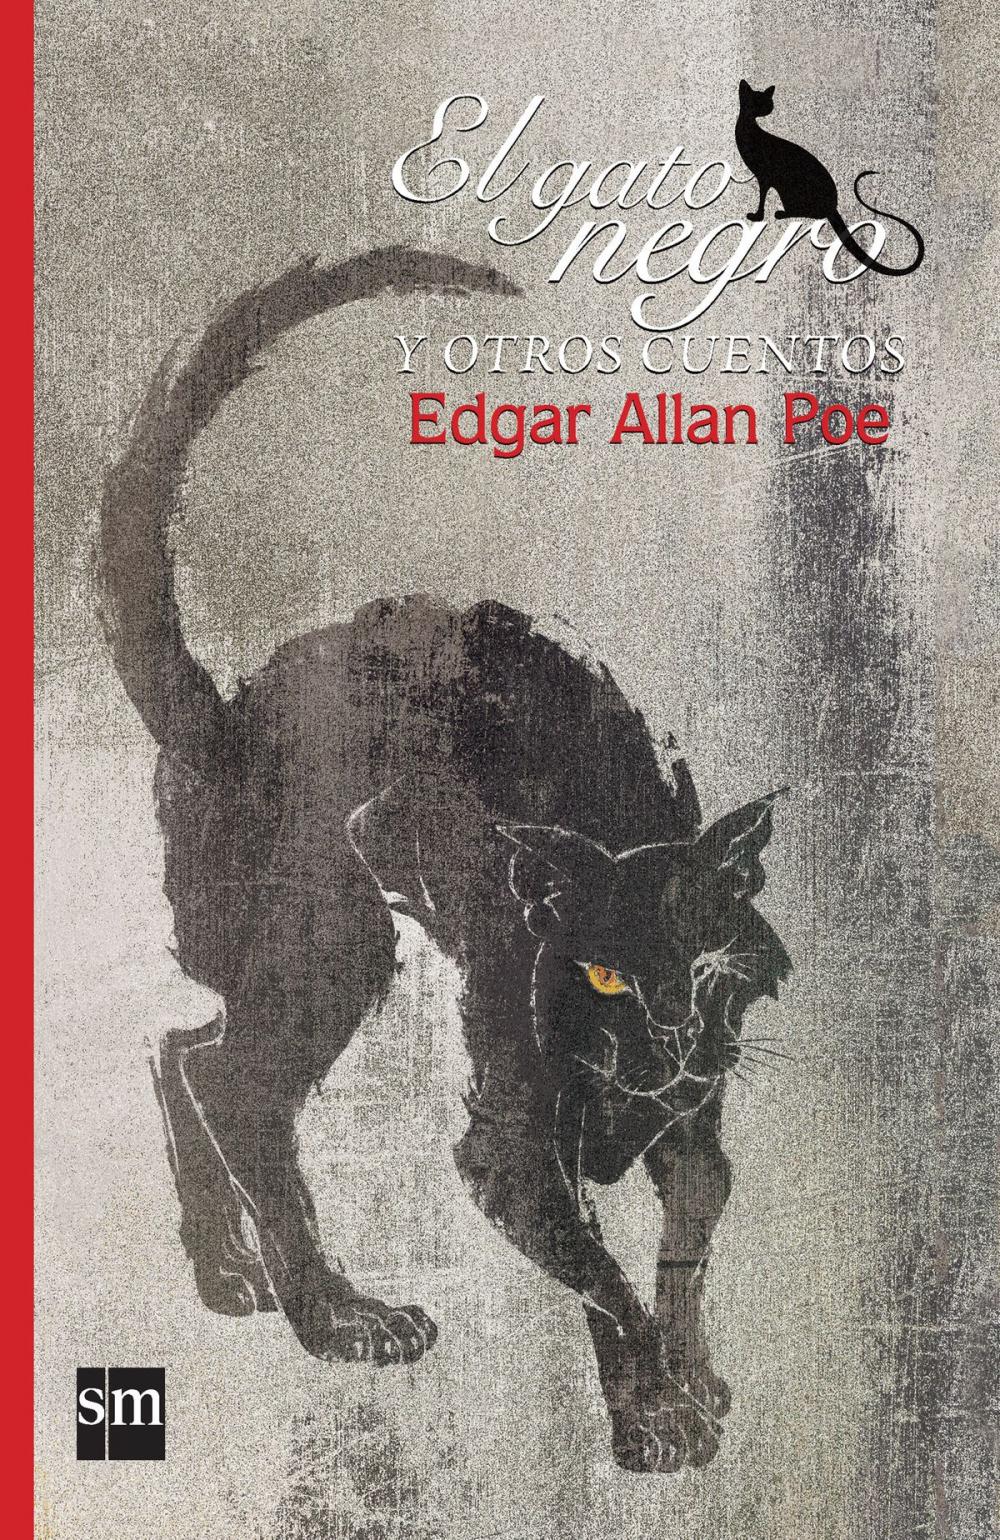 Big bigCover of El gato negro y otros cuentos